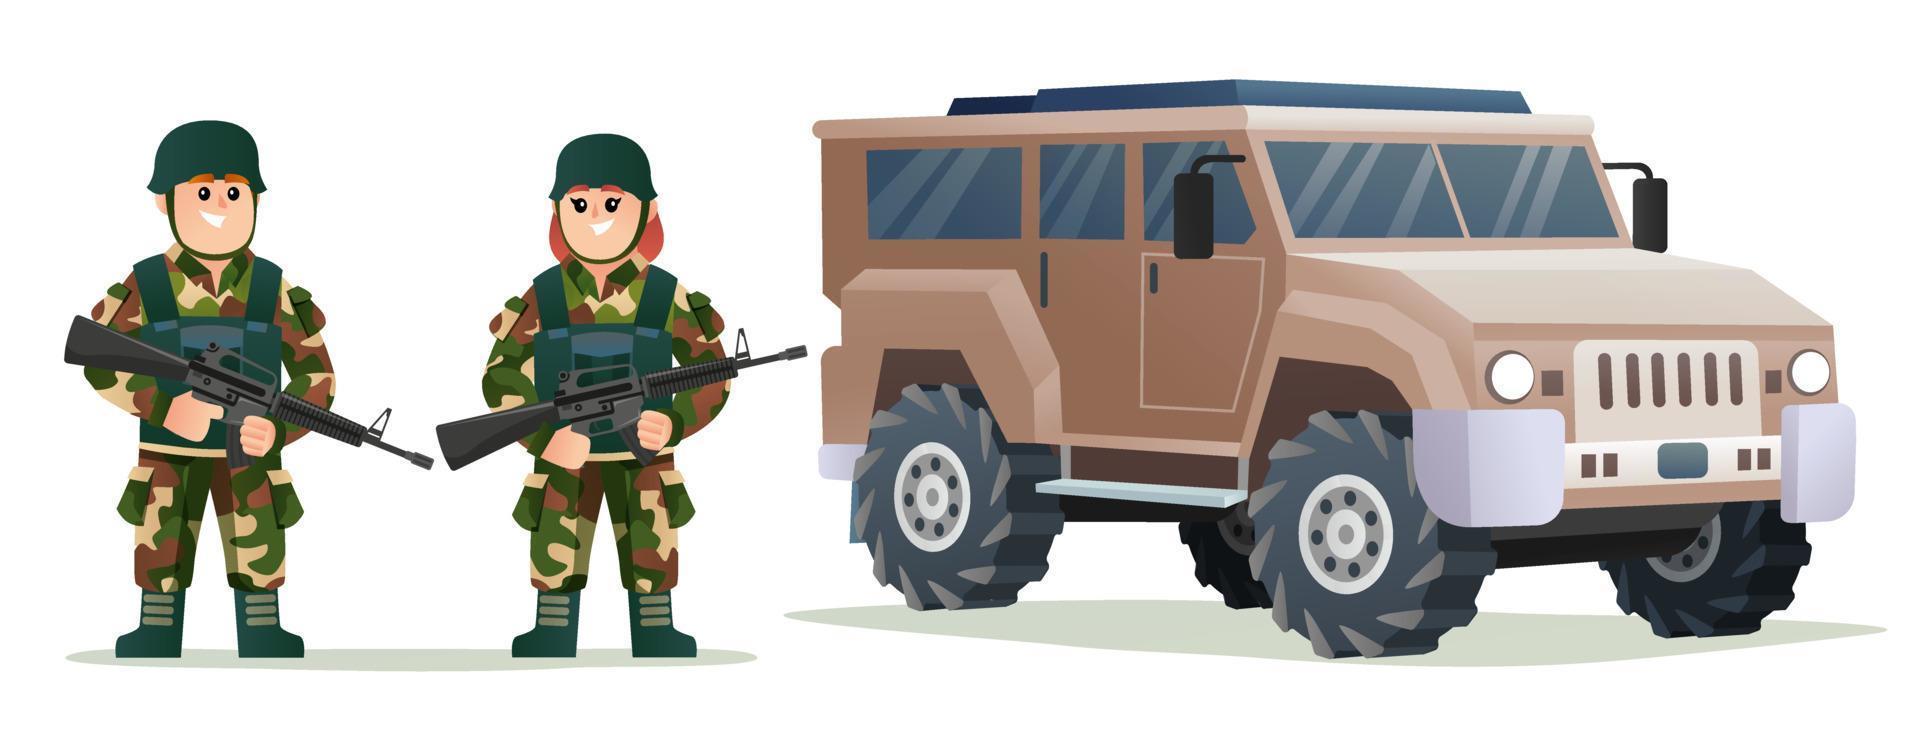 soldati svegli dell'esercito del ragazzino e della ragazza che tengono le pistole dell'arma con l'illustrazione del fumetto del veicolo militare vettore